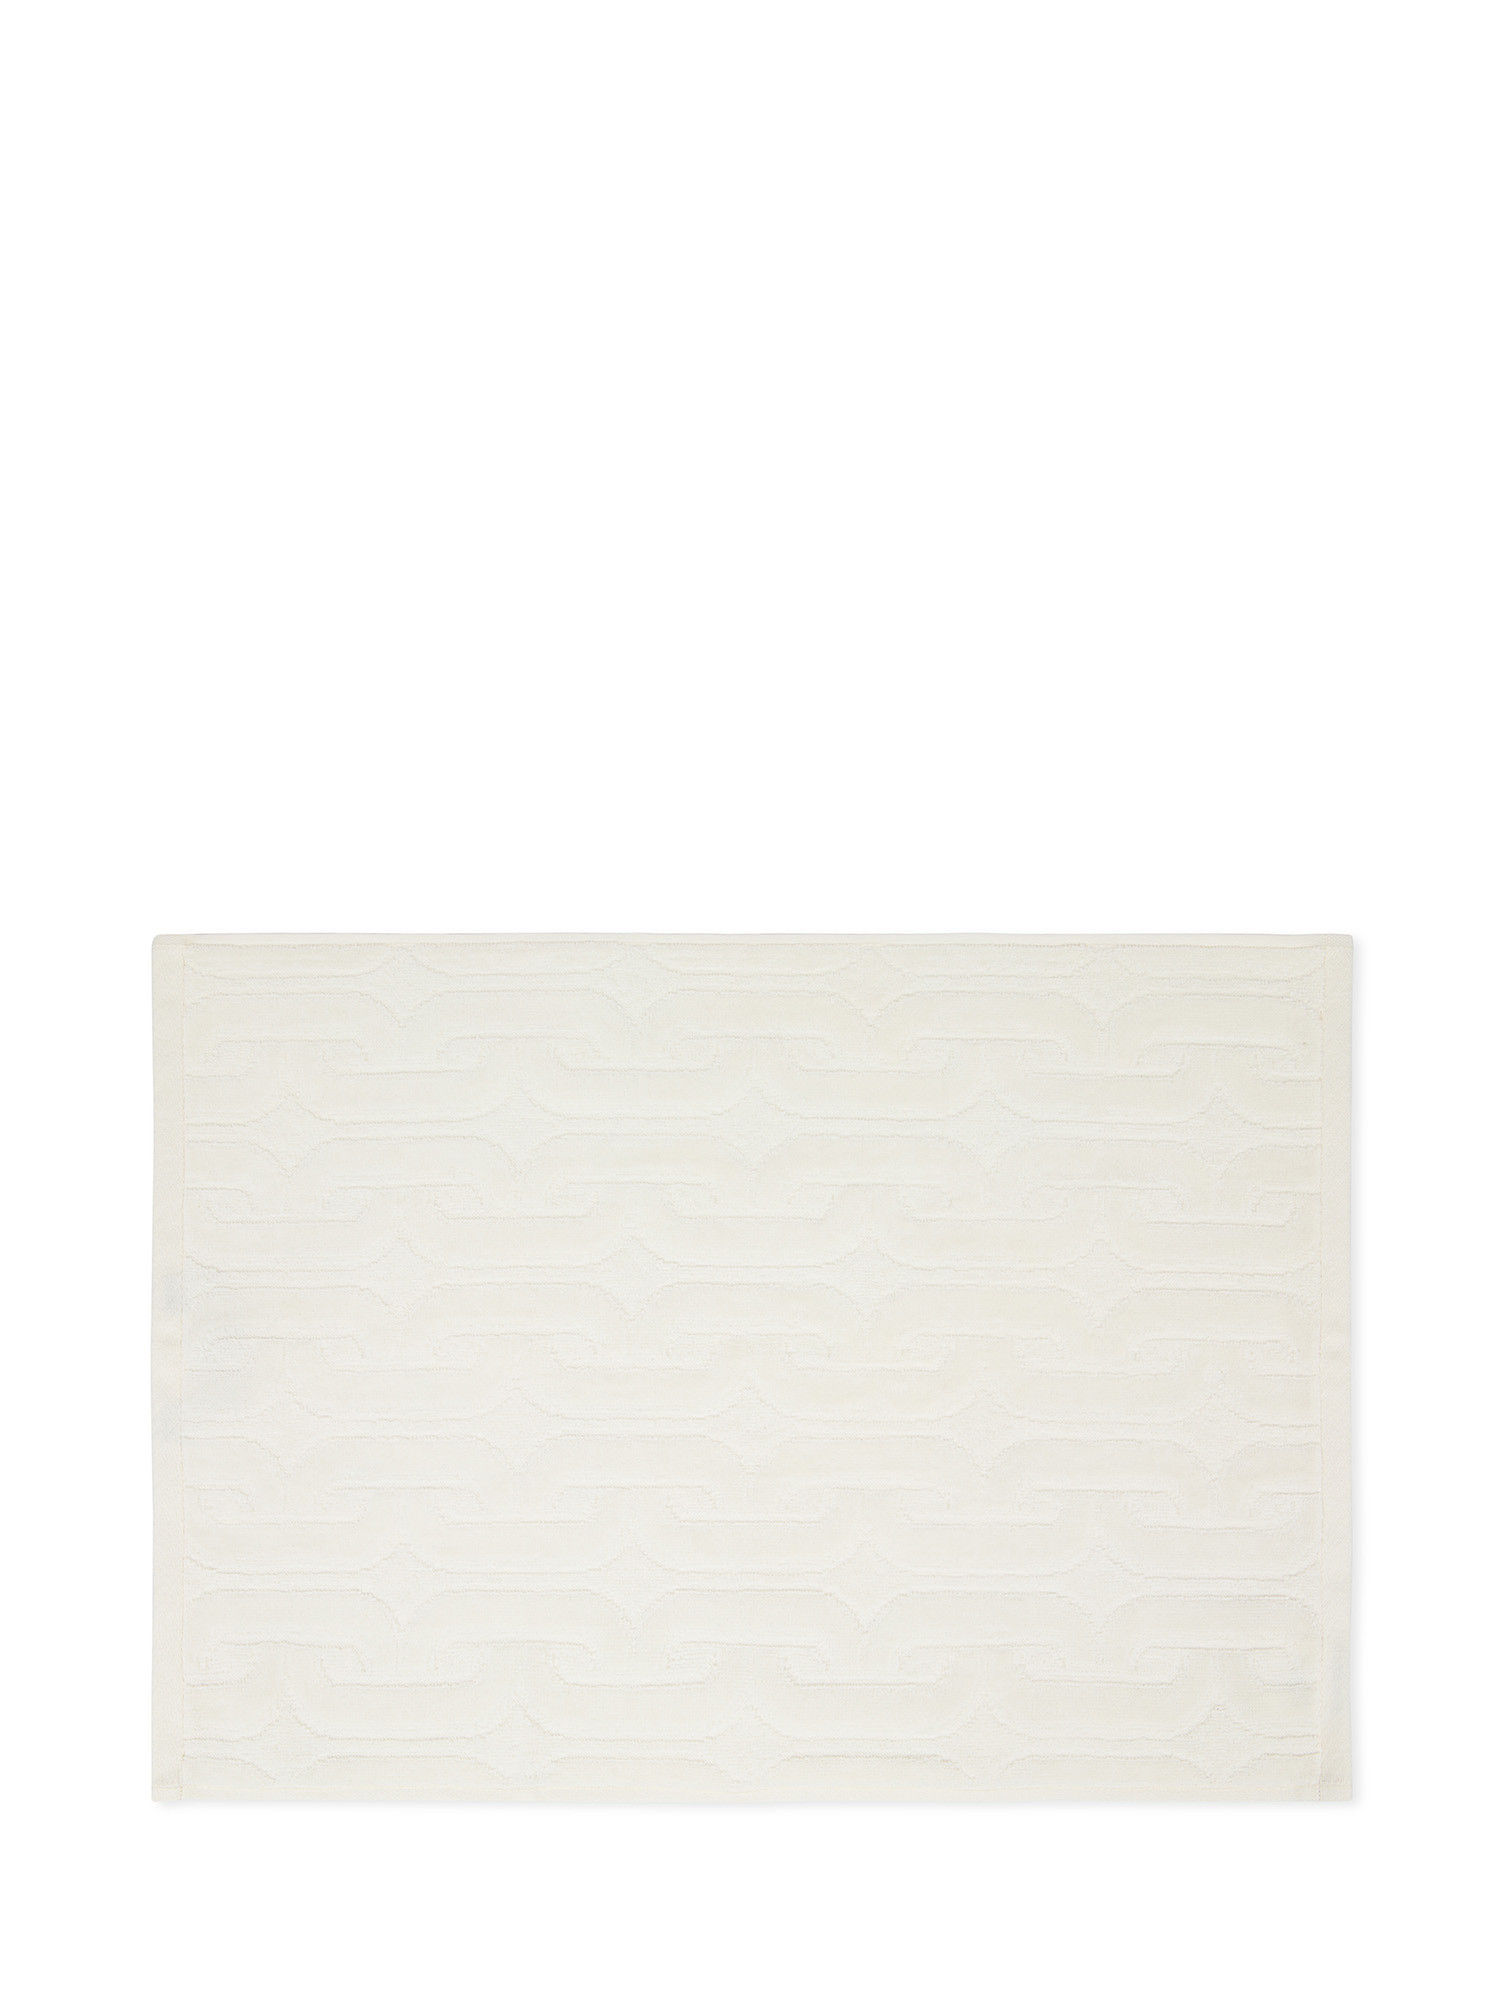 Asciugamano in velour di cotone con lavorazione geometrica a rilievo, Bianco, large image number 1